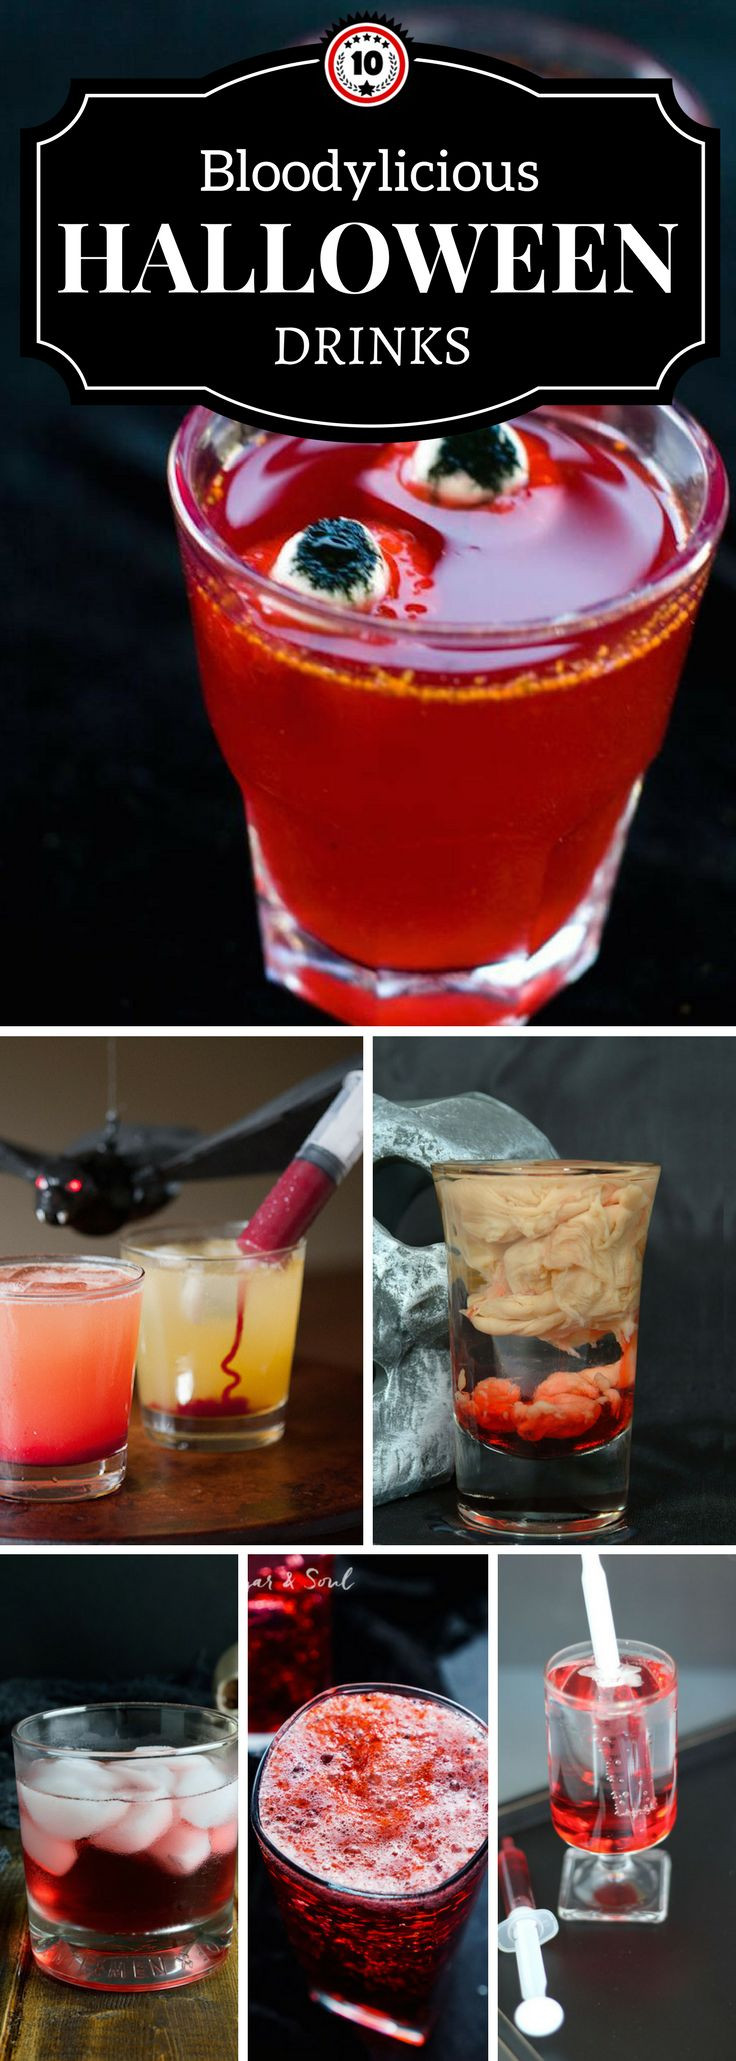 Alcoholic Halloween Drinks
 Best 25 Halloween drinks ideas on Pinterest